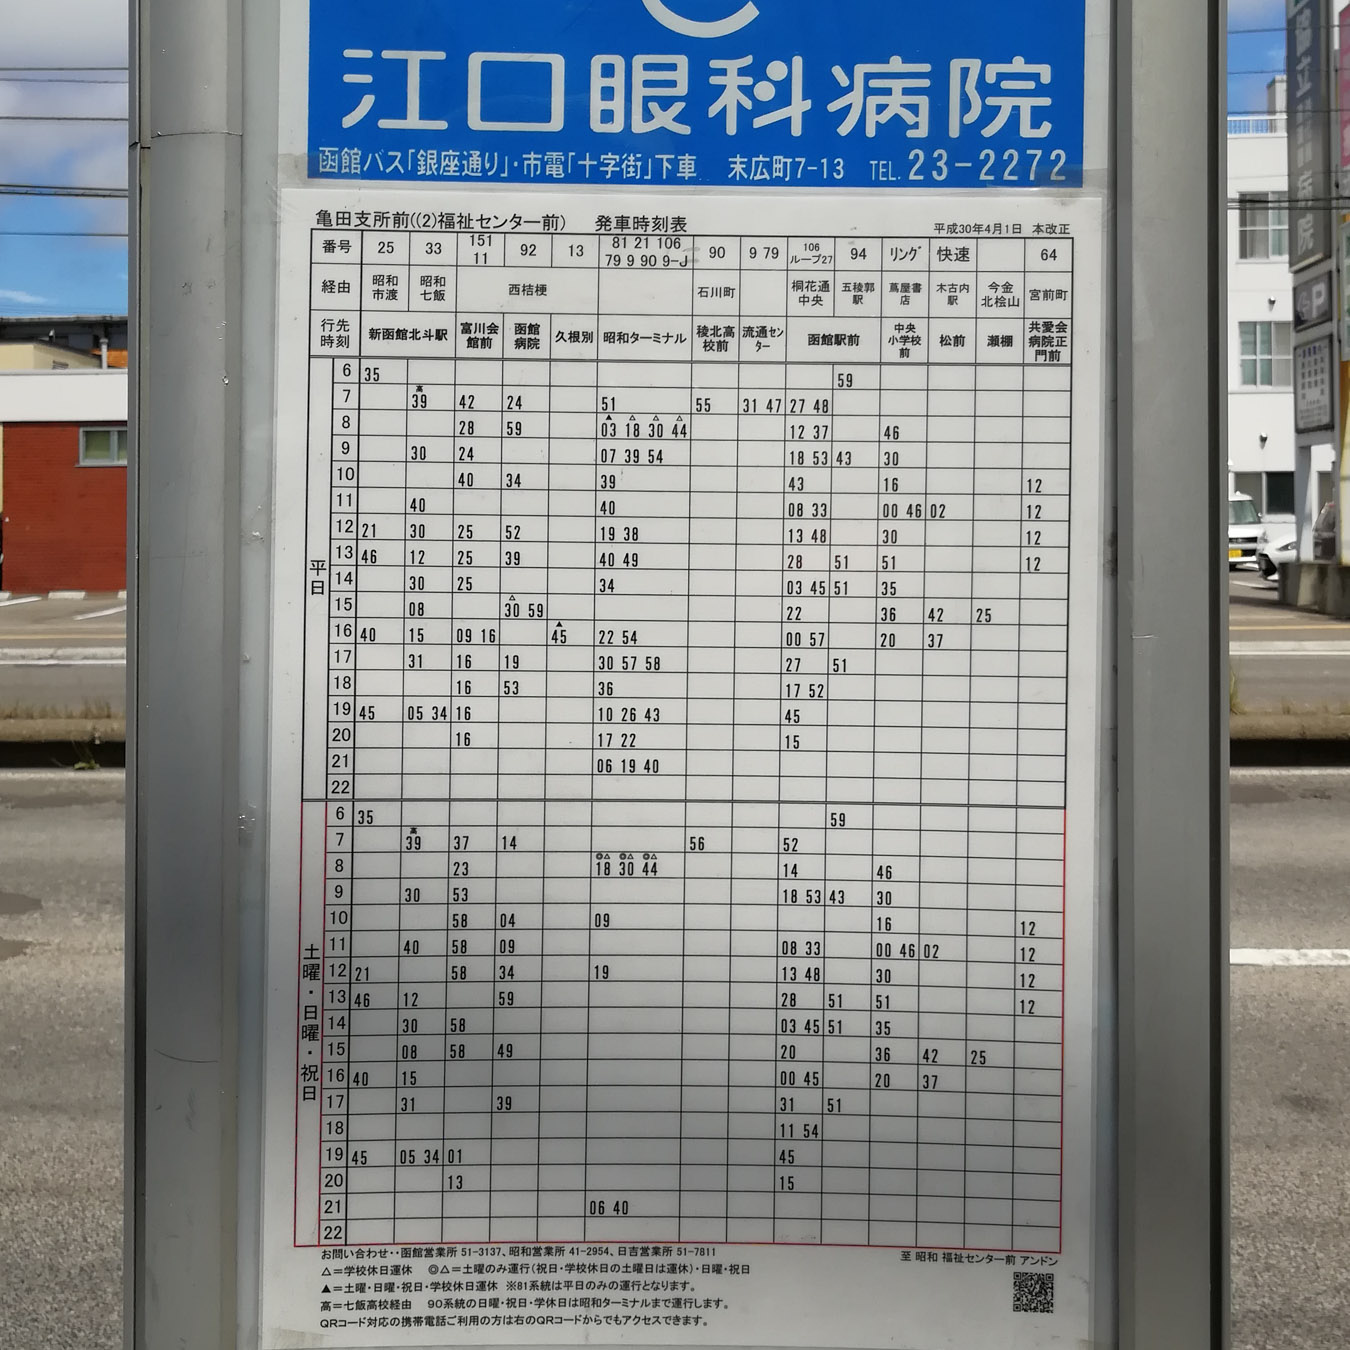 亀田支所前のバス亭の時刻表